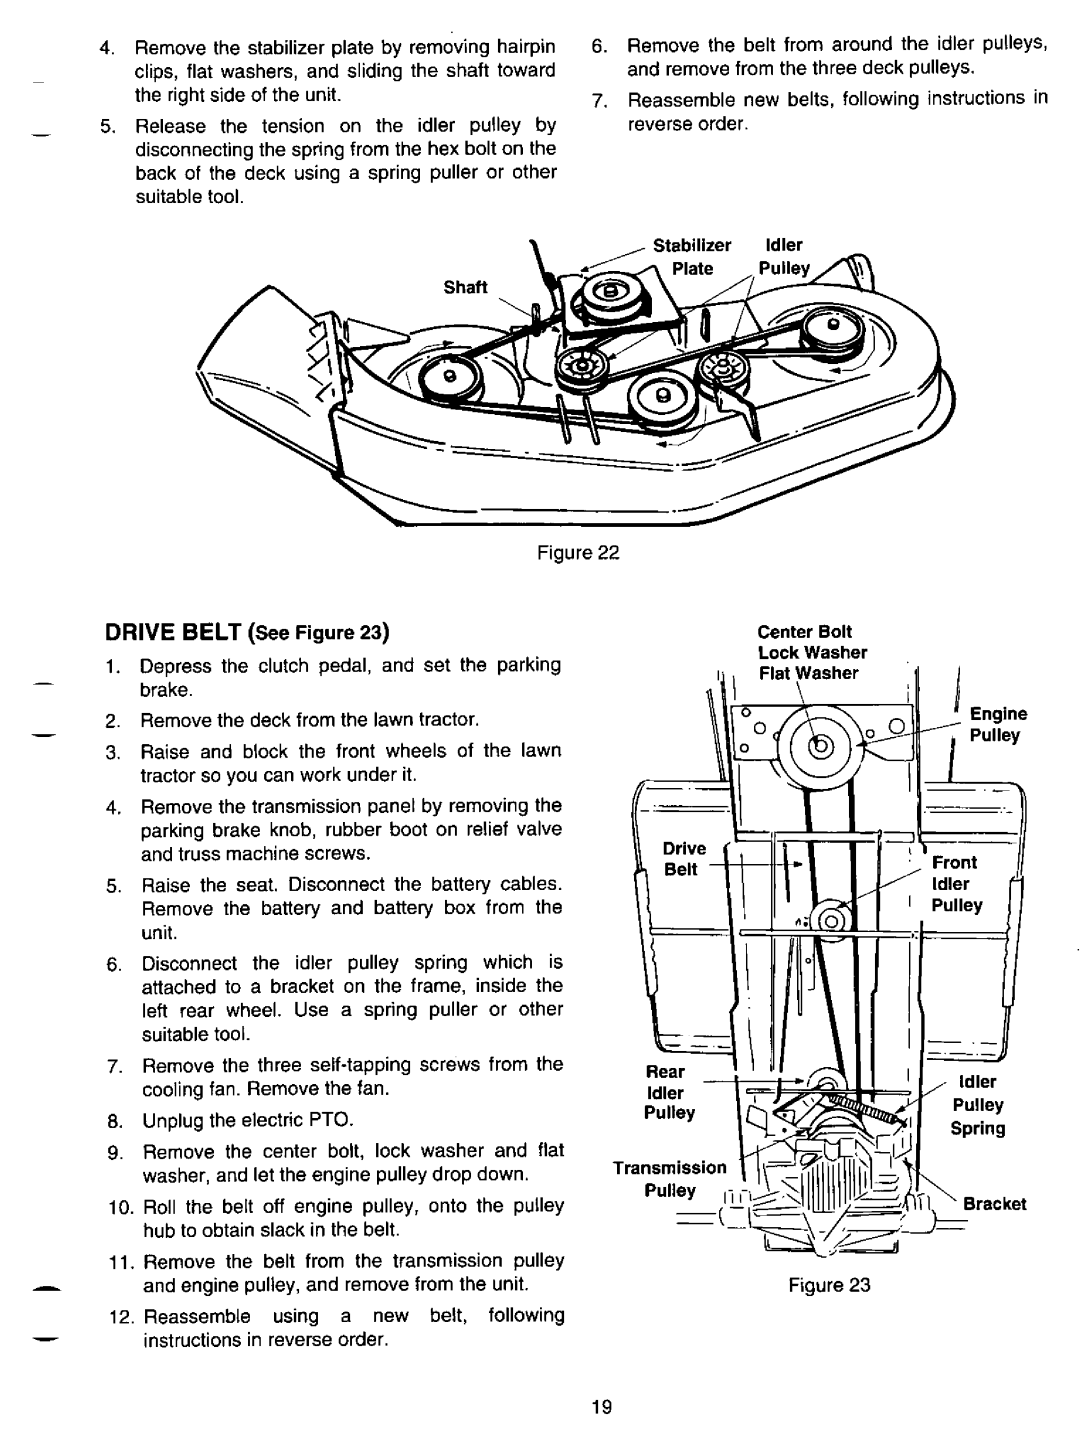 Bolens LT-185 manual 